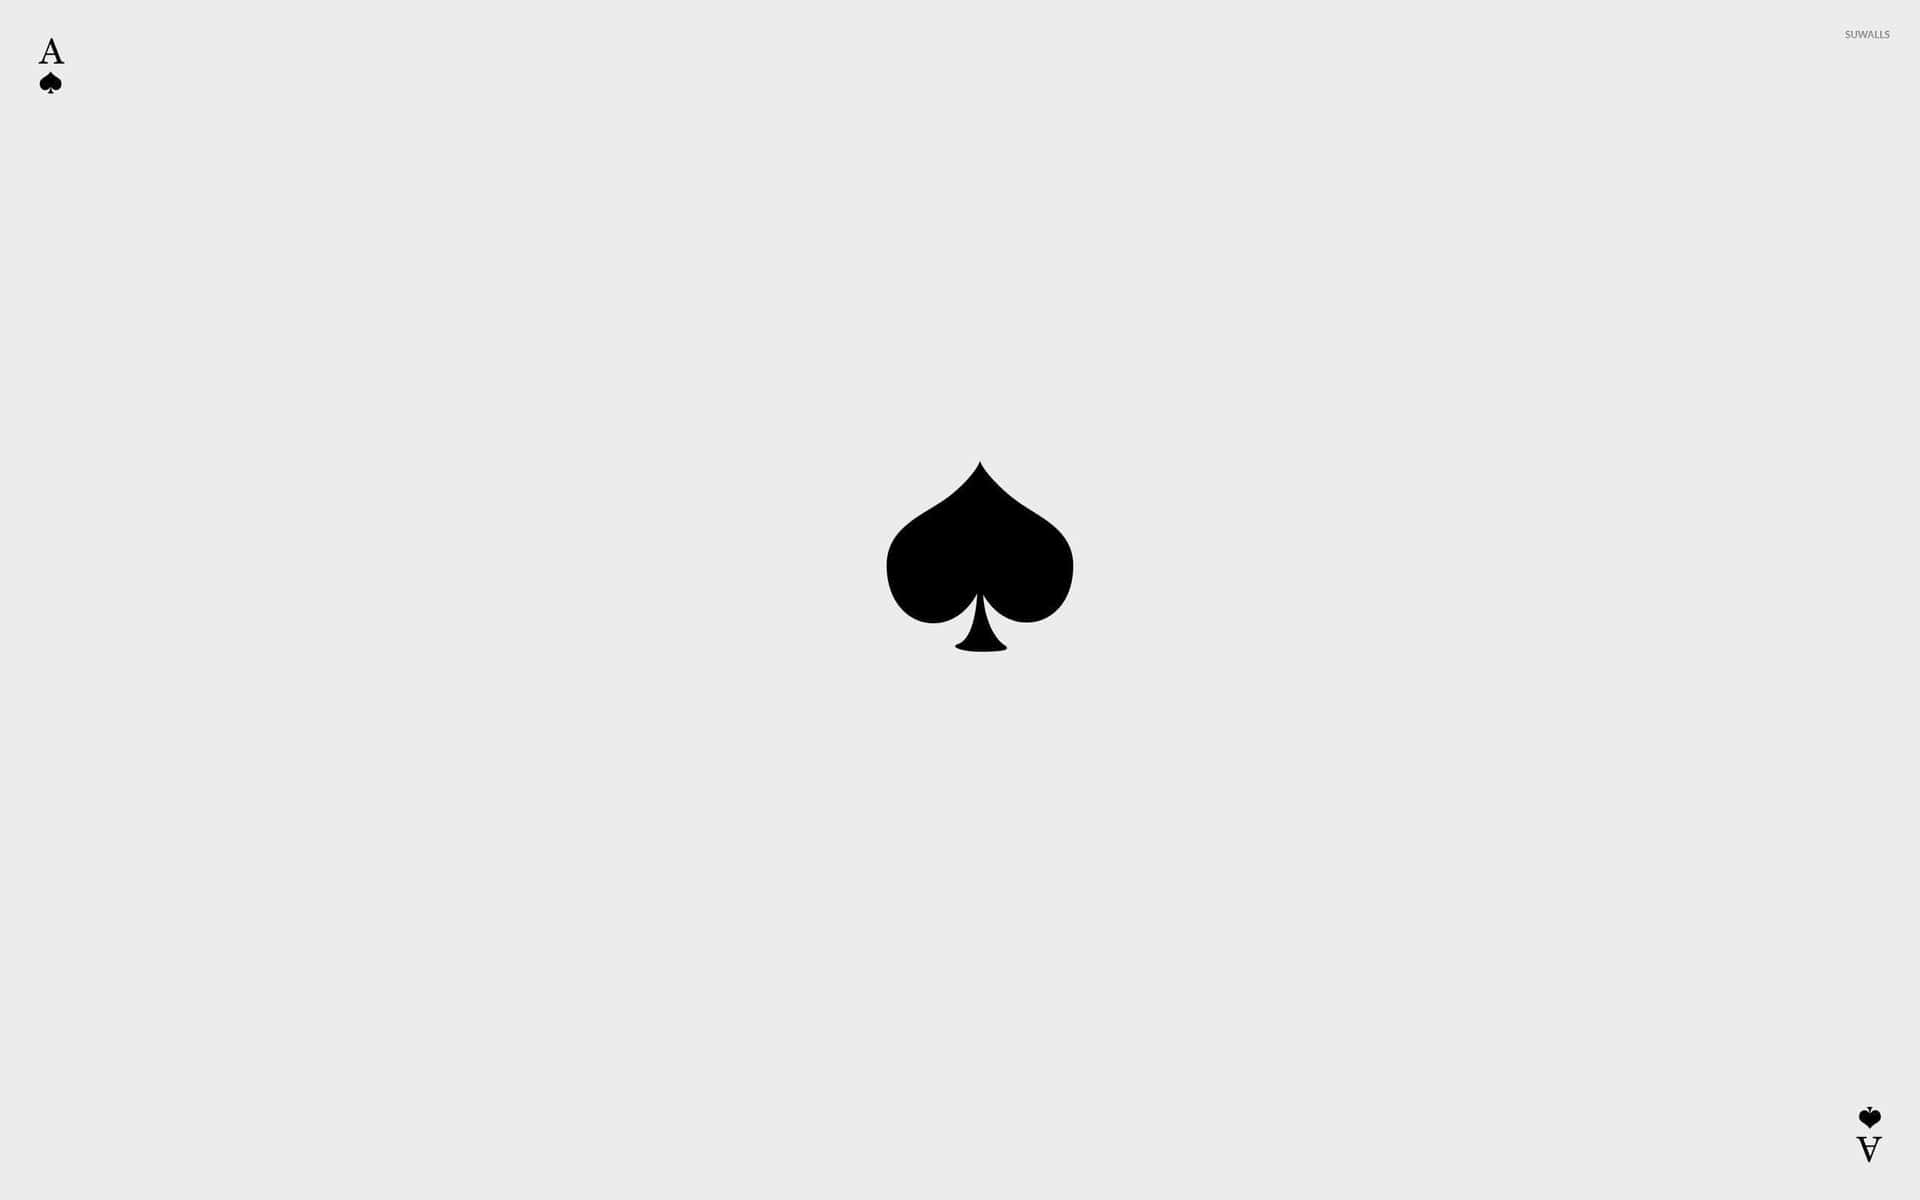 Aceof Spades Card Symbol Wallpaper